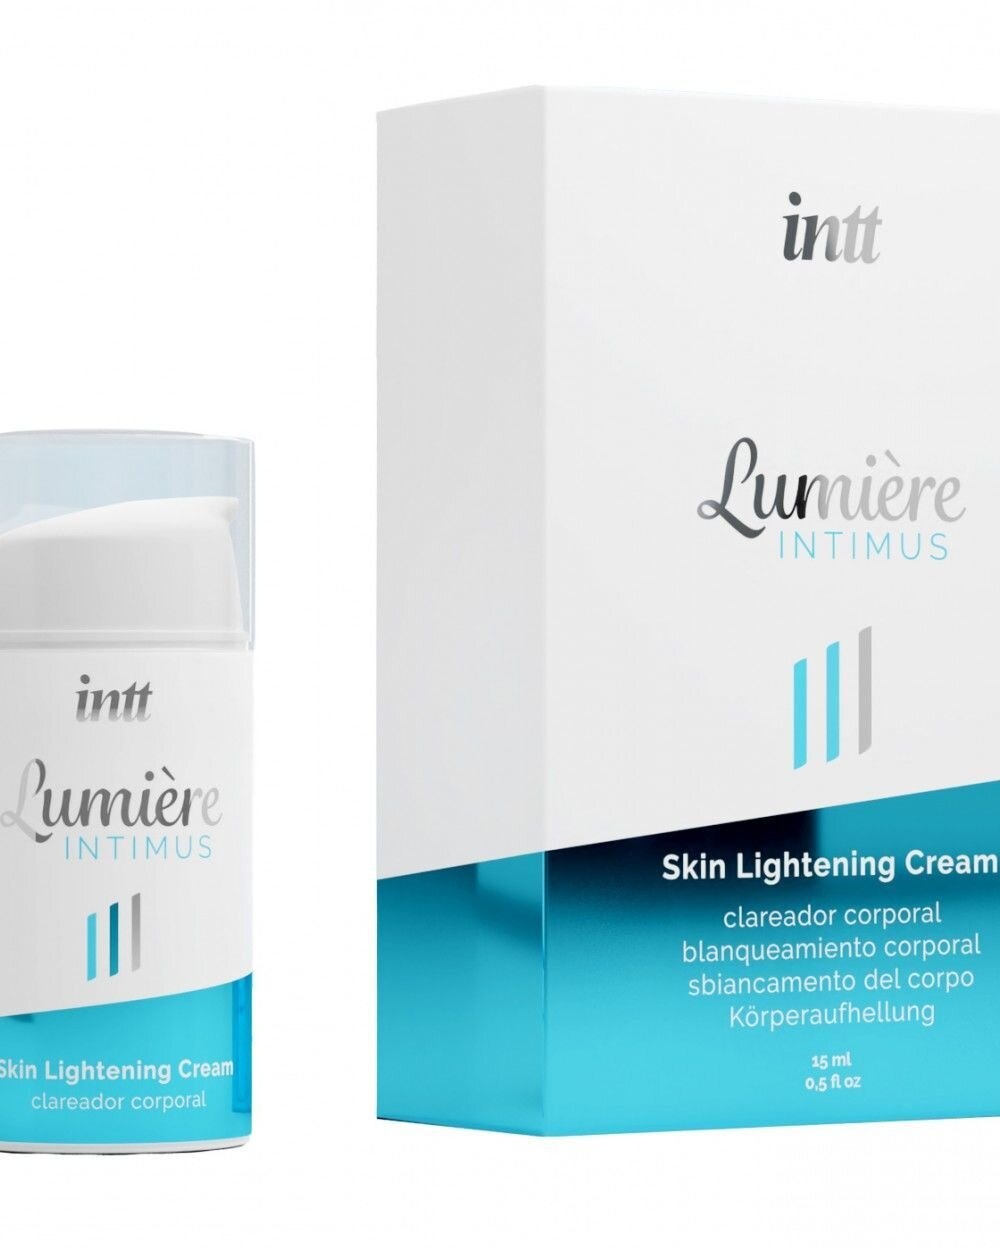 Крем для осветления кожи Intt Lumiere (15 мл) для всего тела и интимных зон, накопительный эффект фото